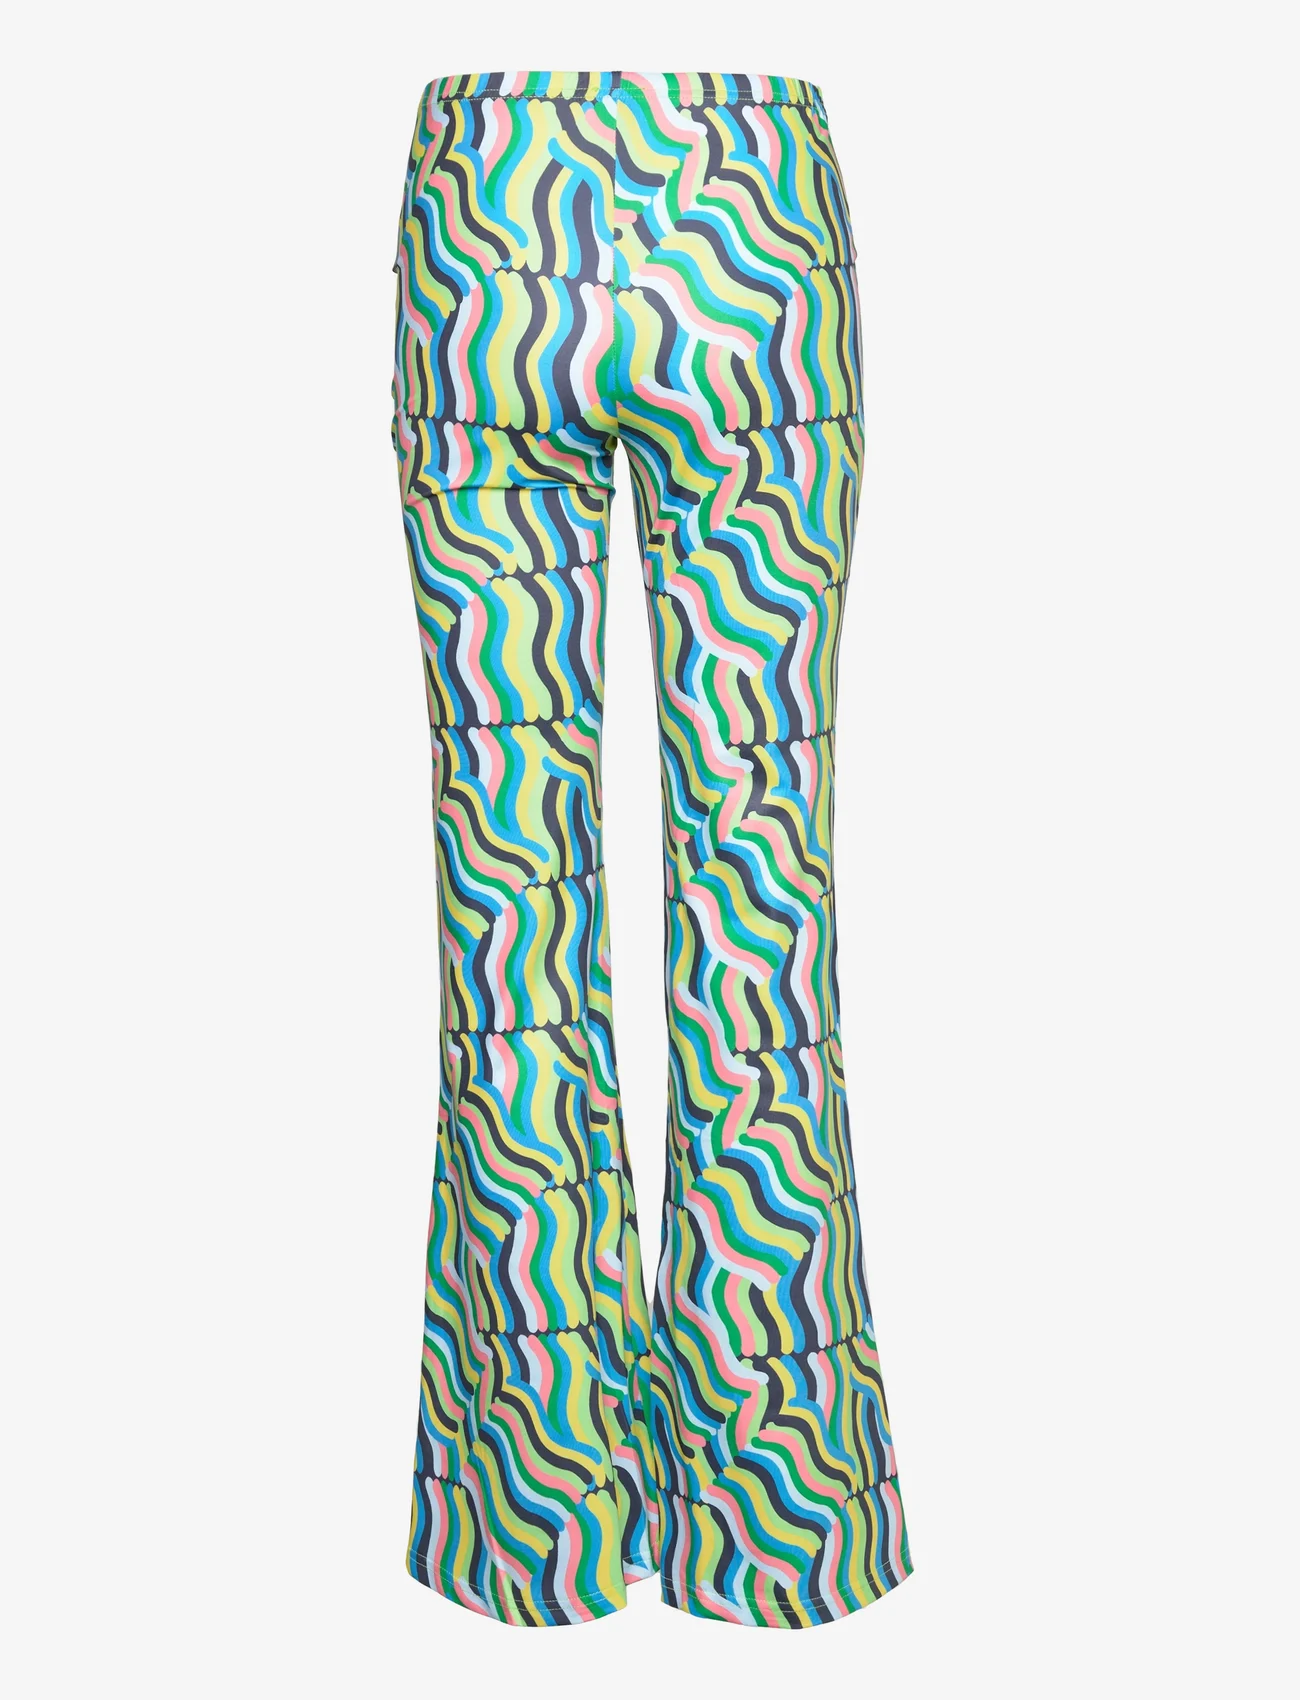 Barbara Kristoffersen by Rosemunde - Trousers - kvinner - lollipop print - 1